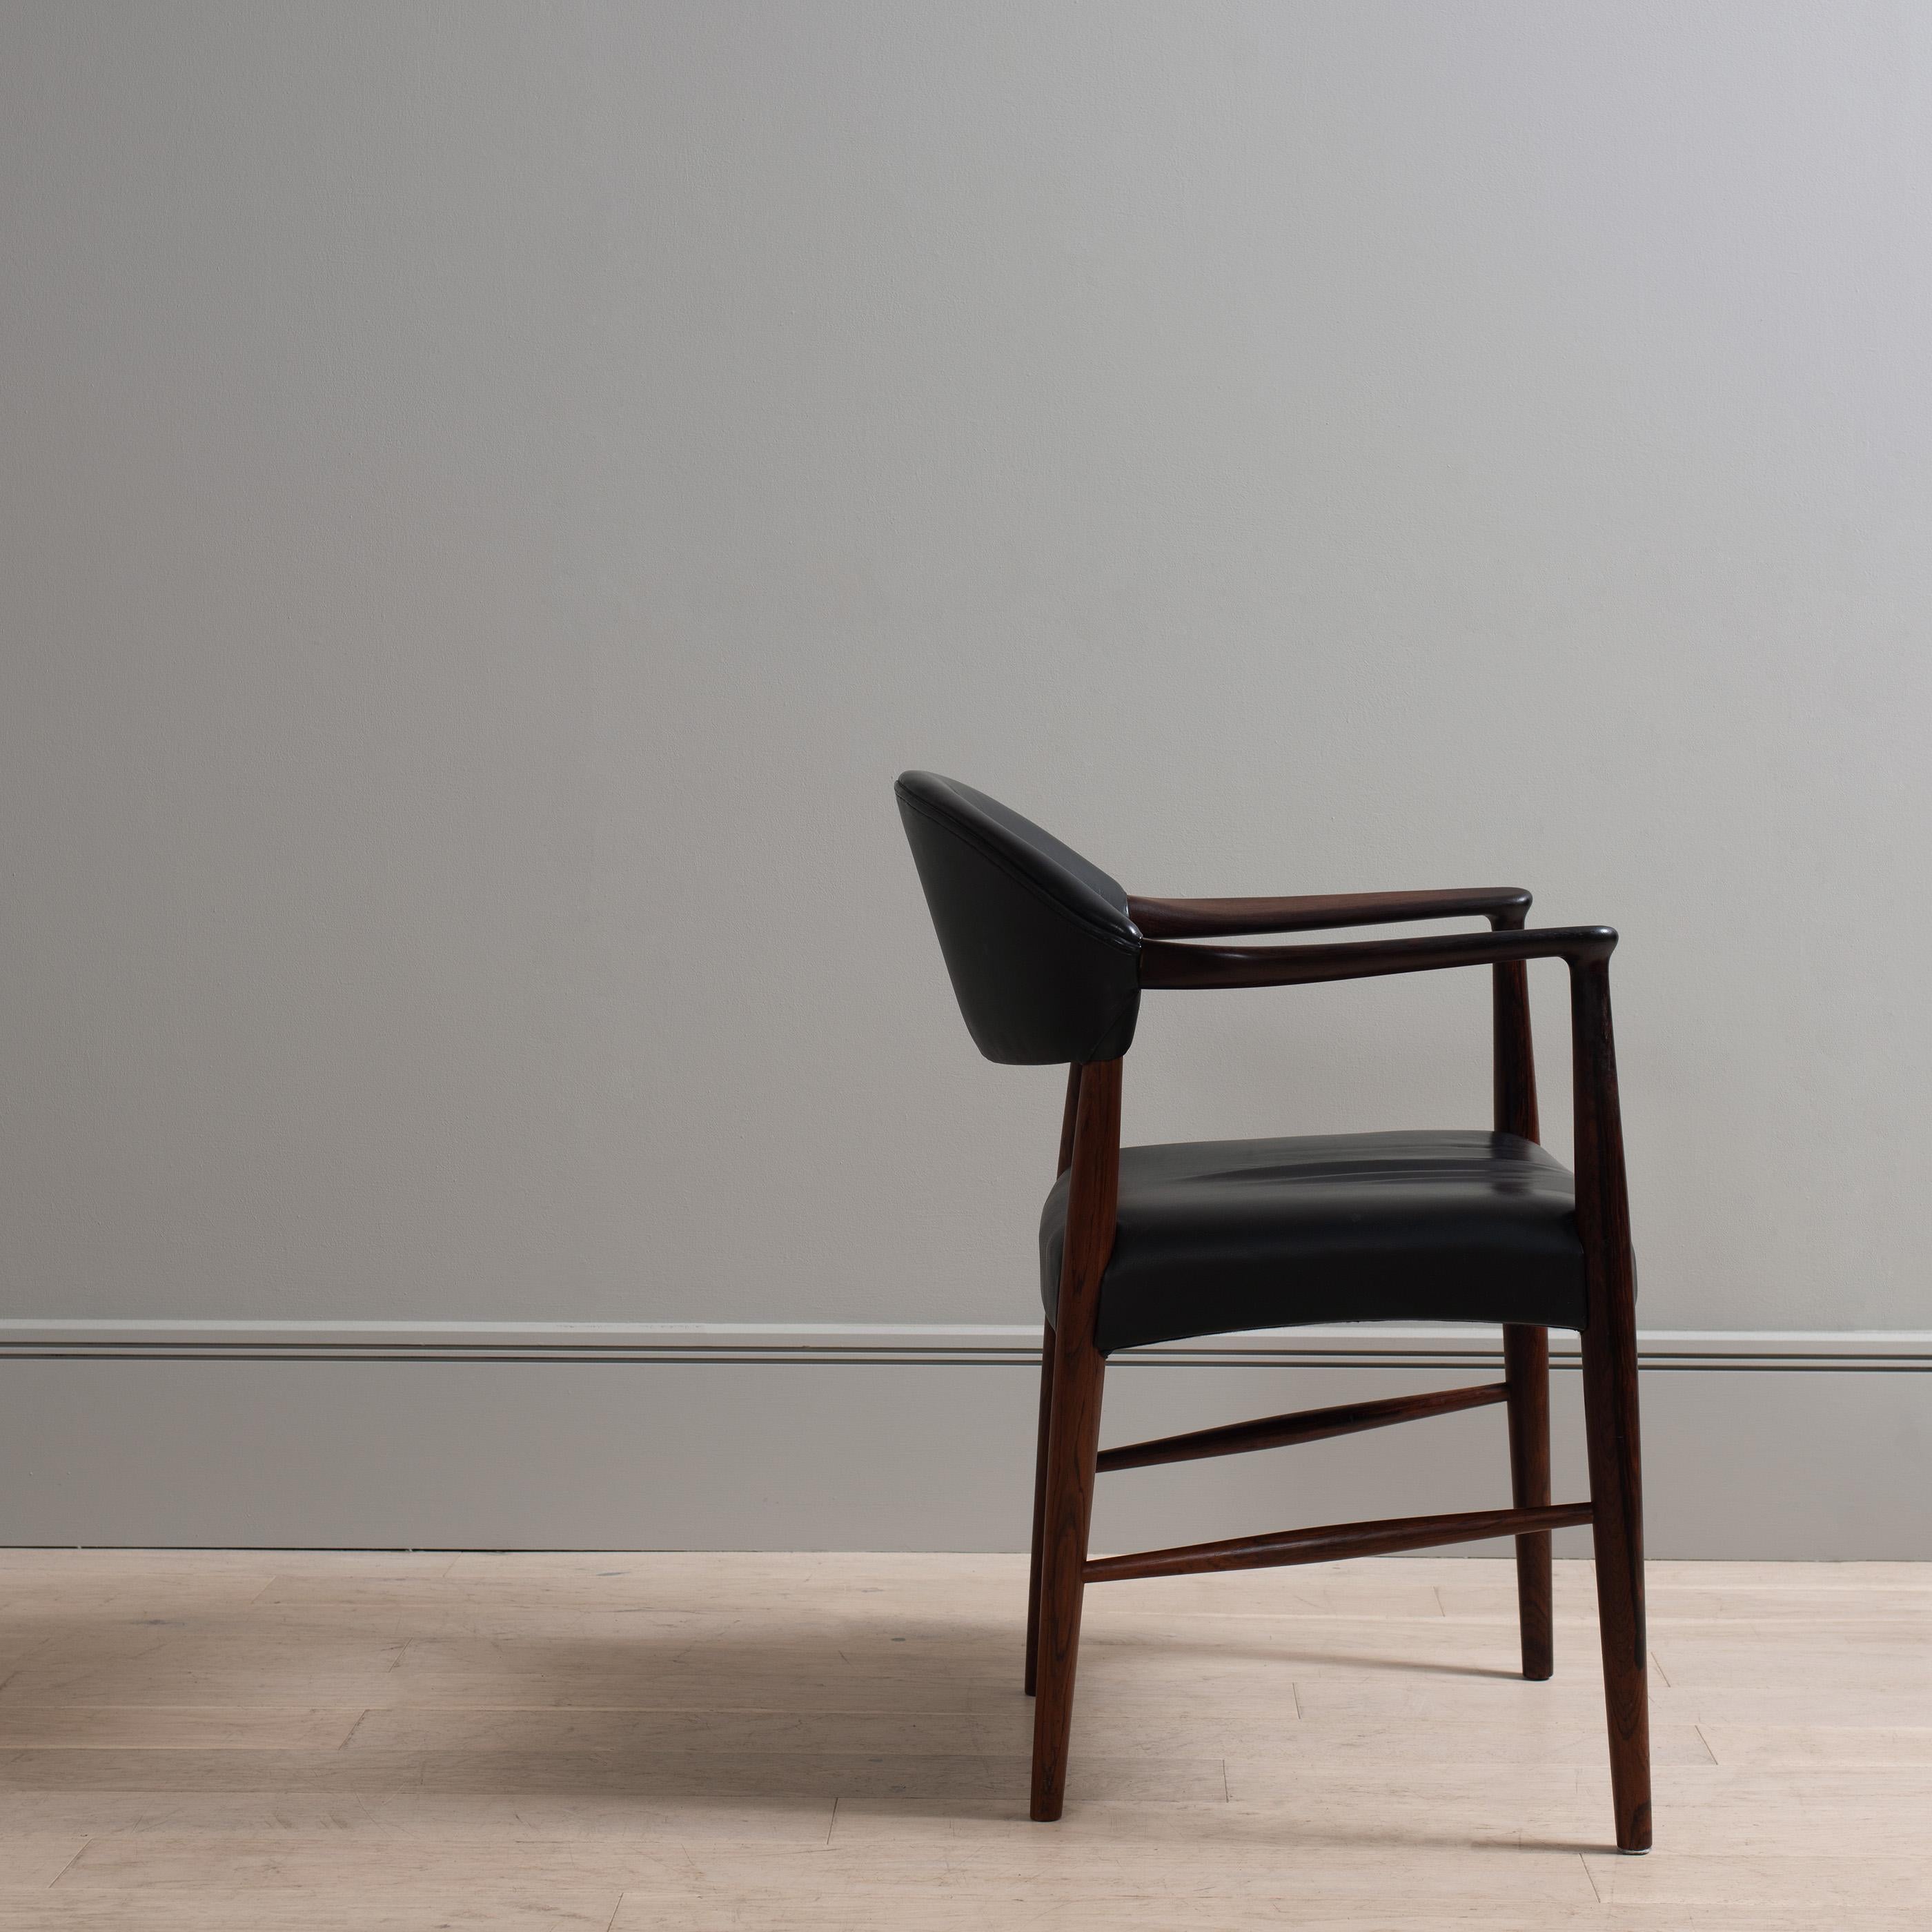  Kurt Olsen Leather Chair 4